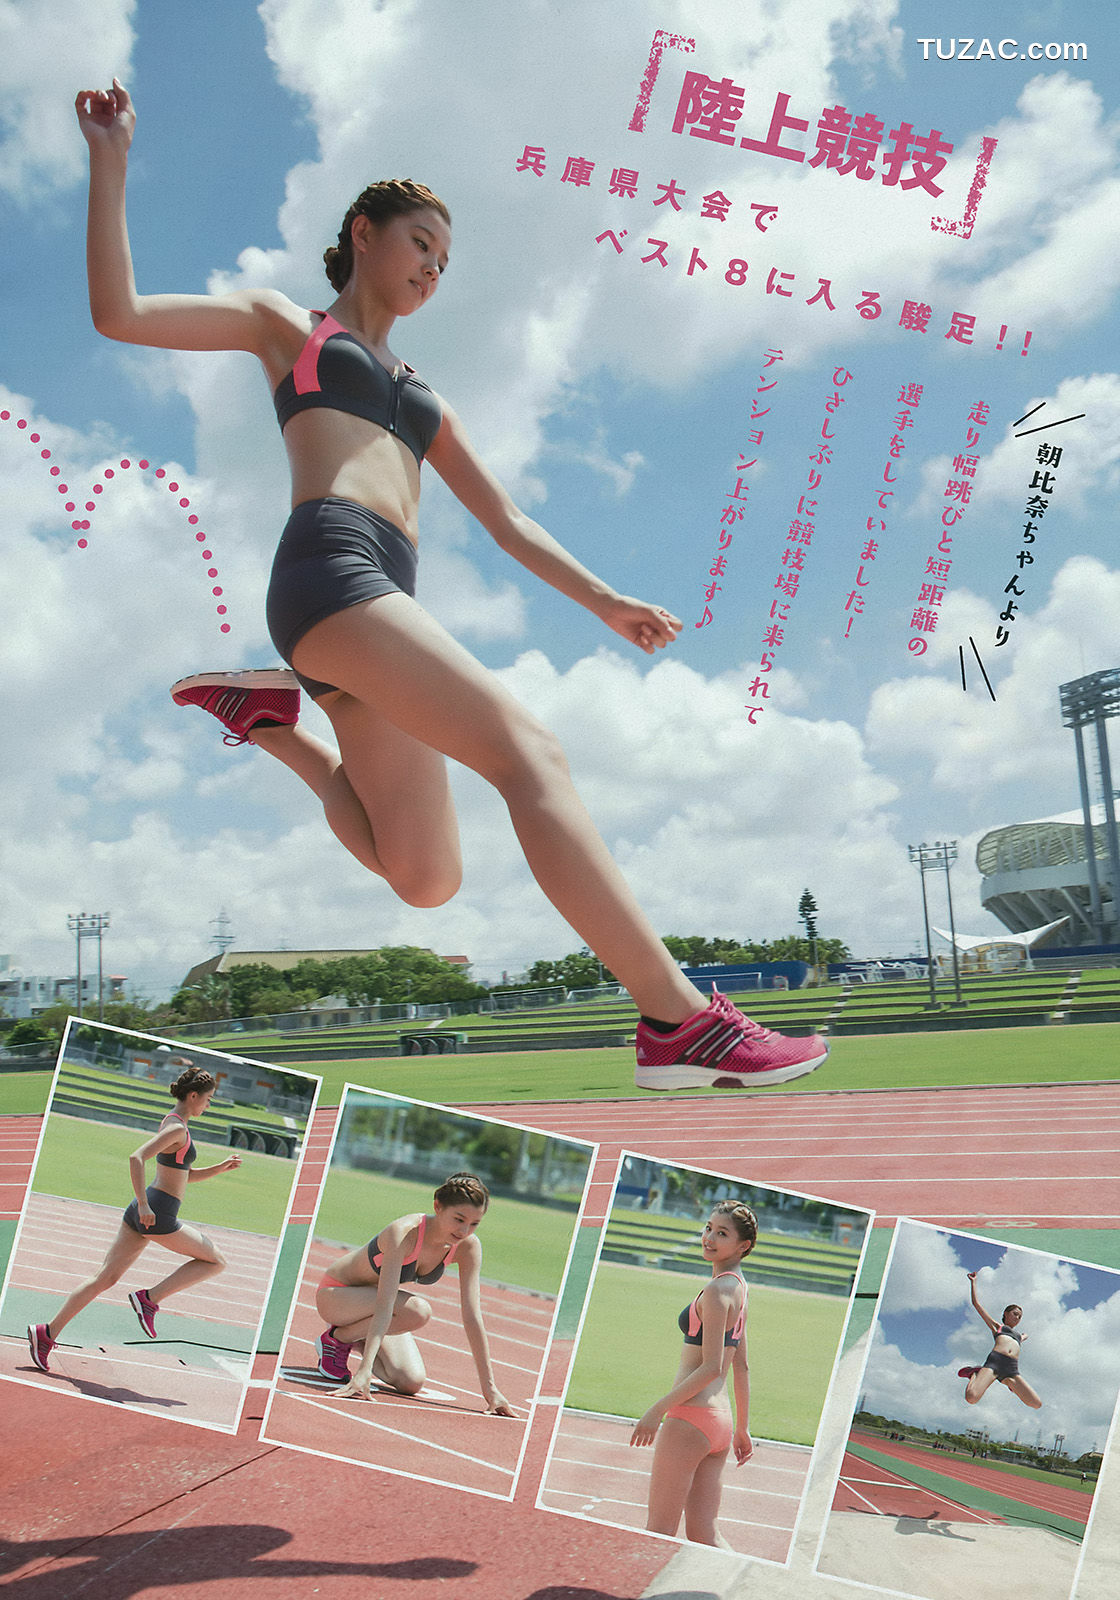 Young Magazine杂志写真_ 朝比奈彩 2015年No.44 写真杂志[13P]